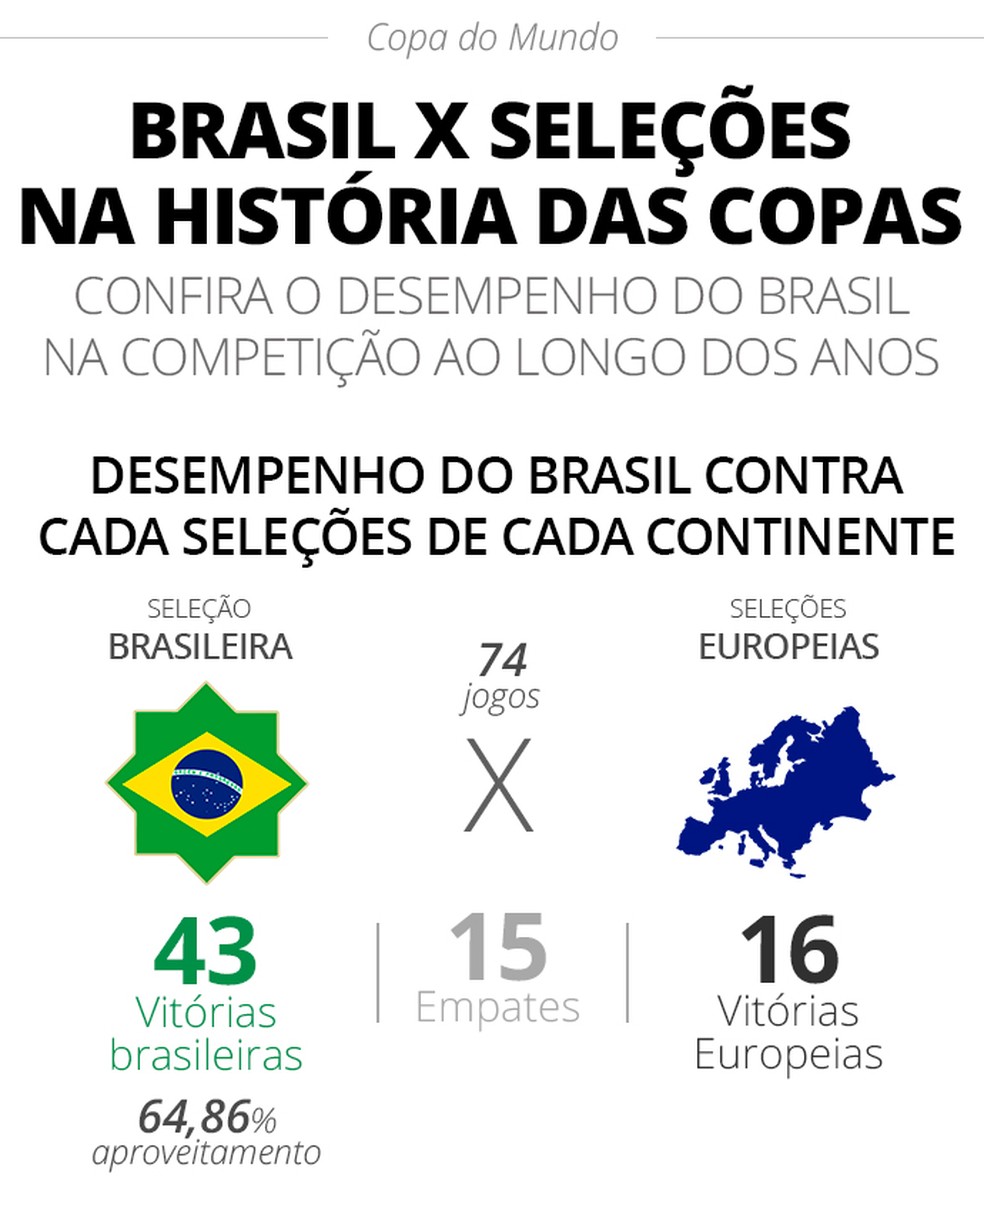 Lembrete da Copa Jogos do Brasil Temos Telão e Lugar Aconhegante